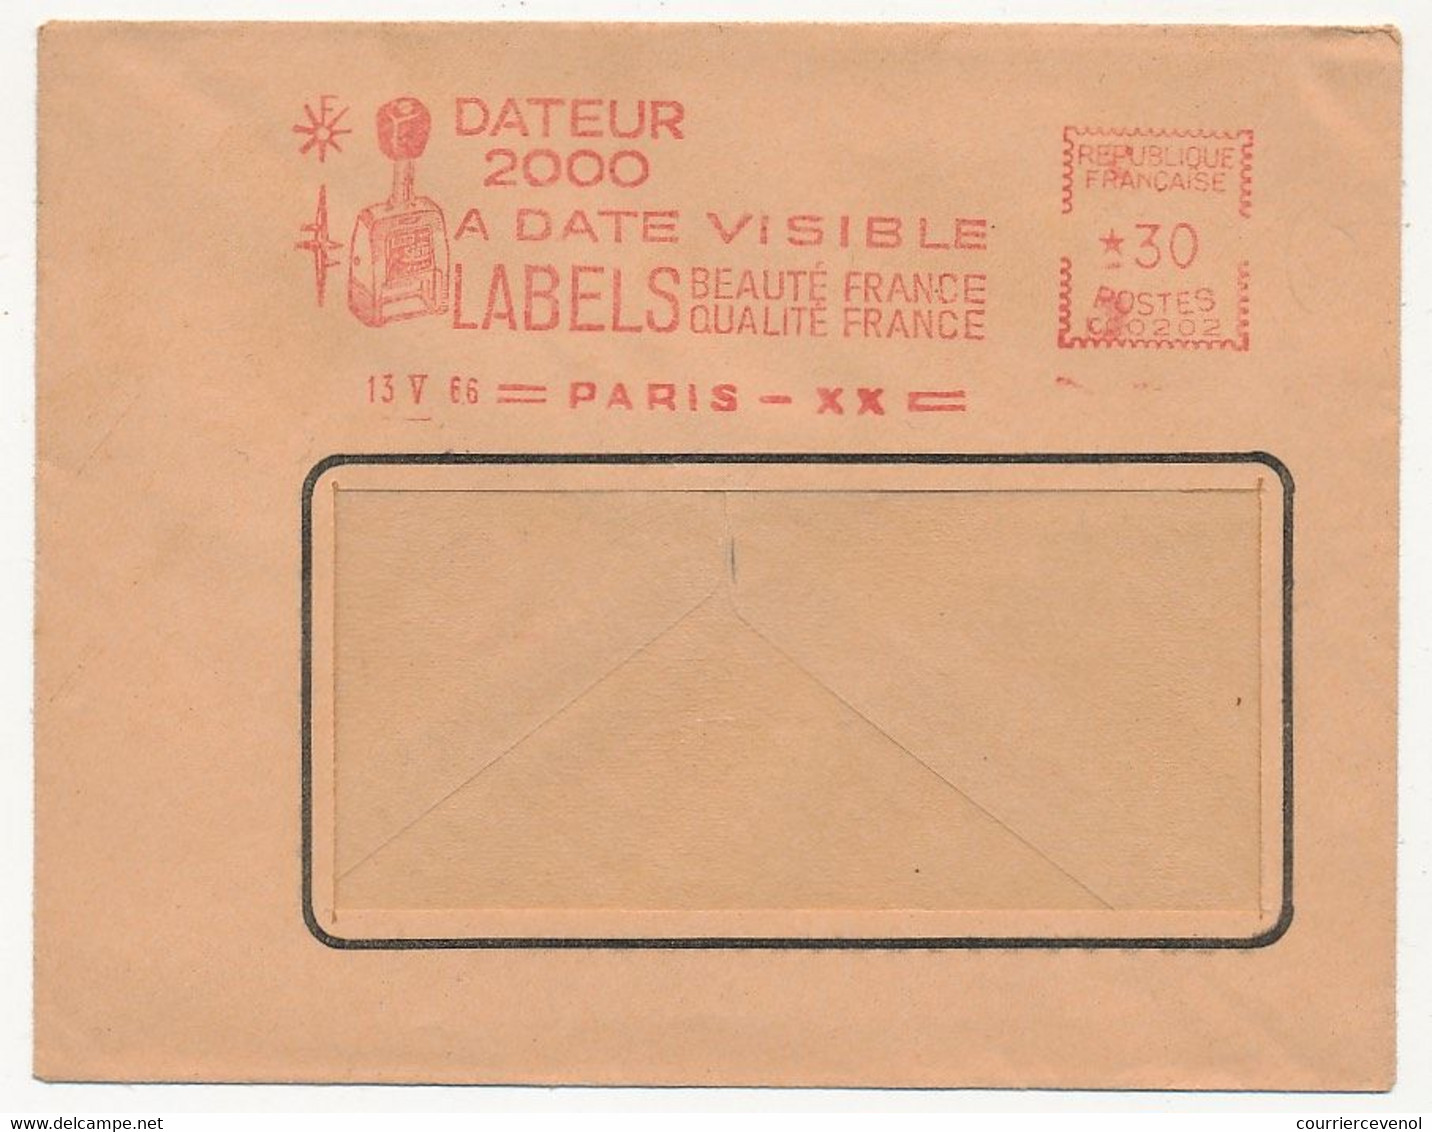 FRANCE - Env Fenêtre EMA - Dateur 2000 à Date Visible - LABELS Beauté France Qualité F... PARIS XX - 13/5/1966 - EMA ( Maquina De Huellas A Franquear)